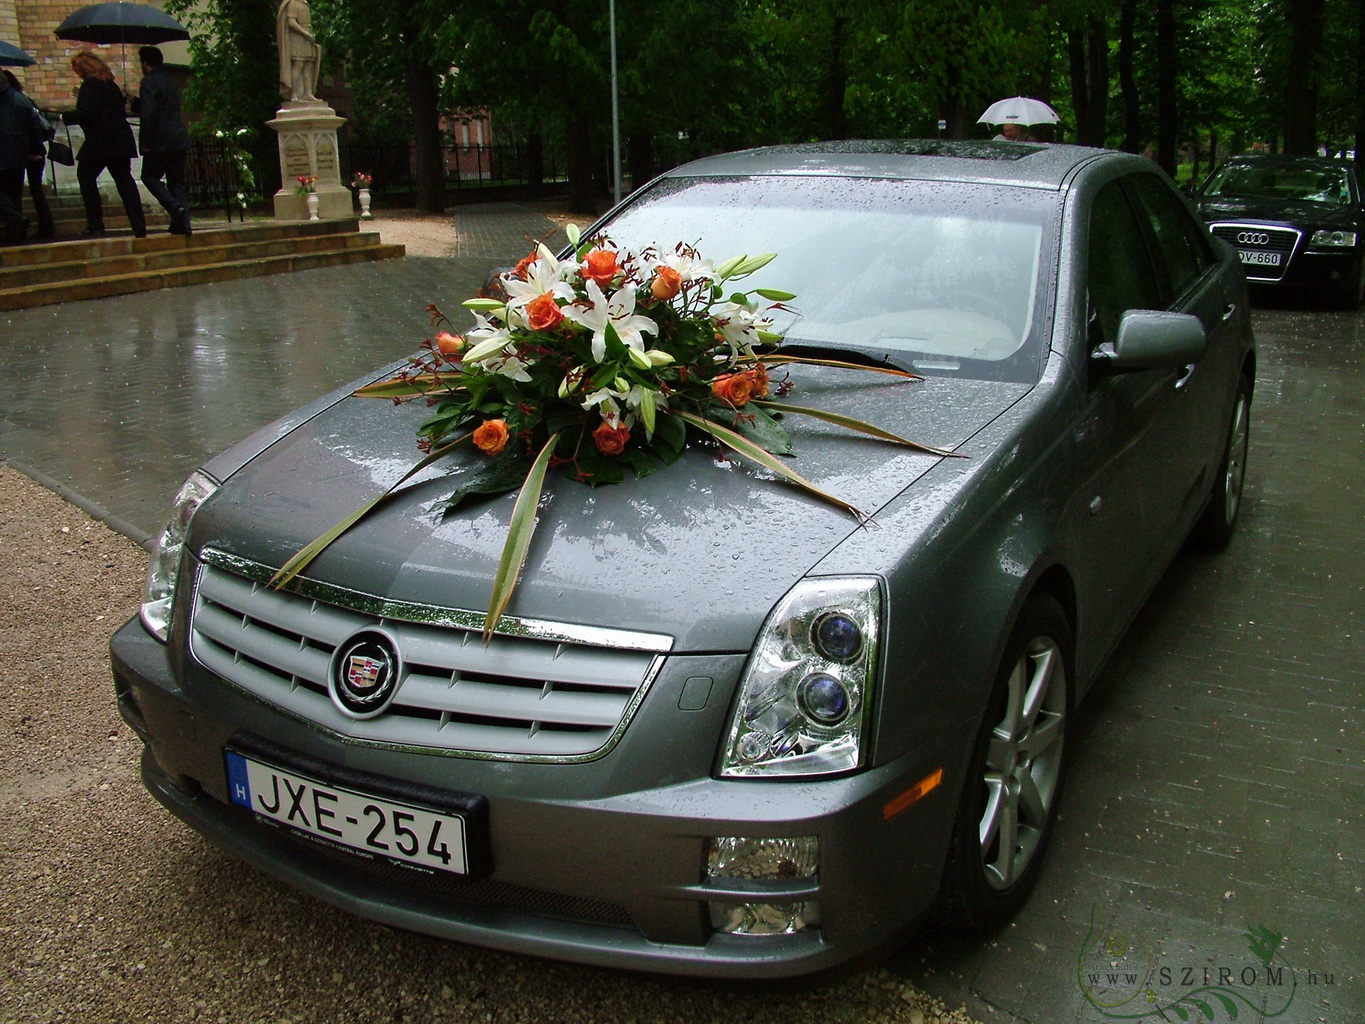 Virágküldés Budapest - kerek autódísz rózsával és kengurumanccsal (liliom, narancs, fehér)